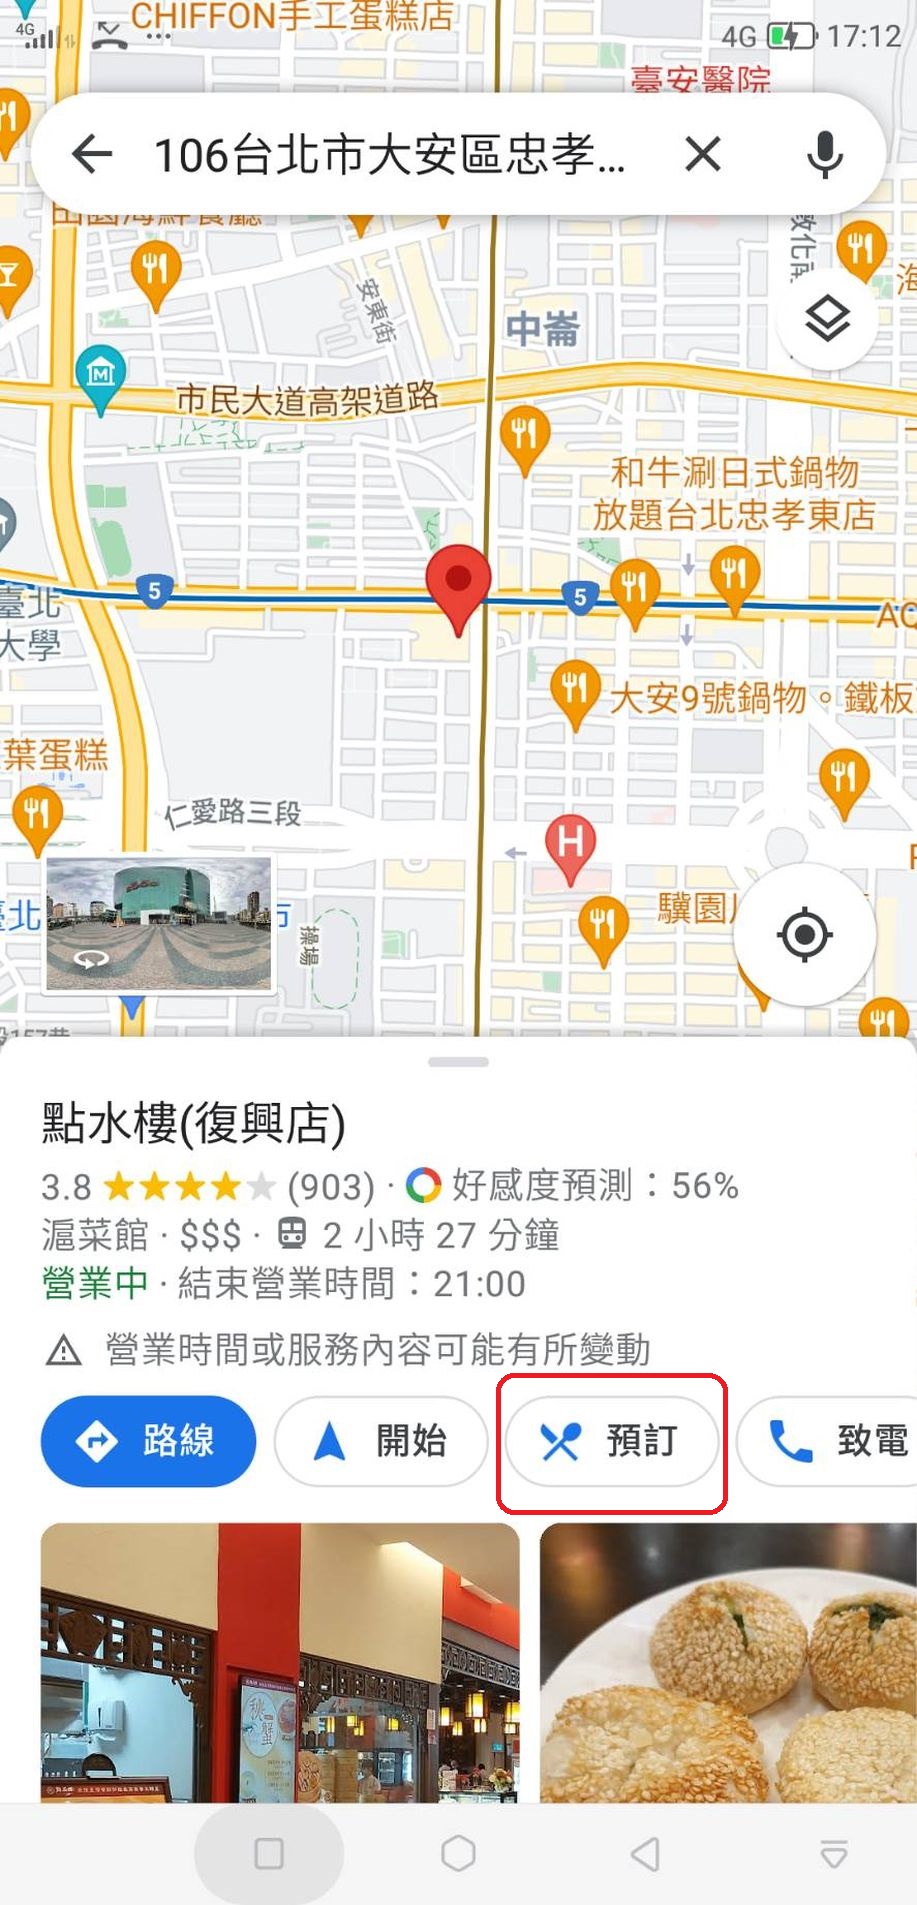 Google Map一鍵訂位【Mapsbooking知識7551地圖預訂候位】方便!便宜!Google地圖上的店家必備 吃貨旅遊作家水靜葳ING找樂子 (2)